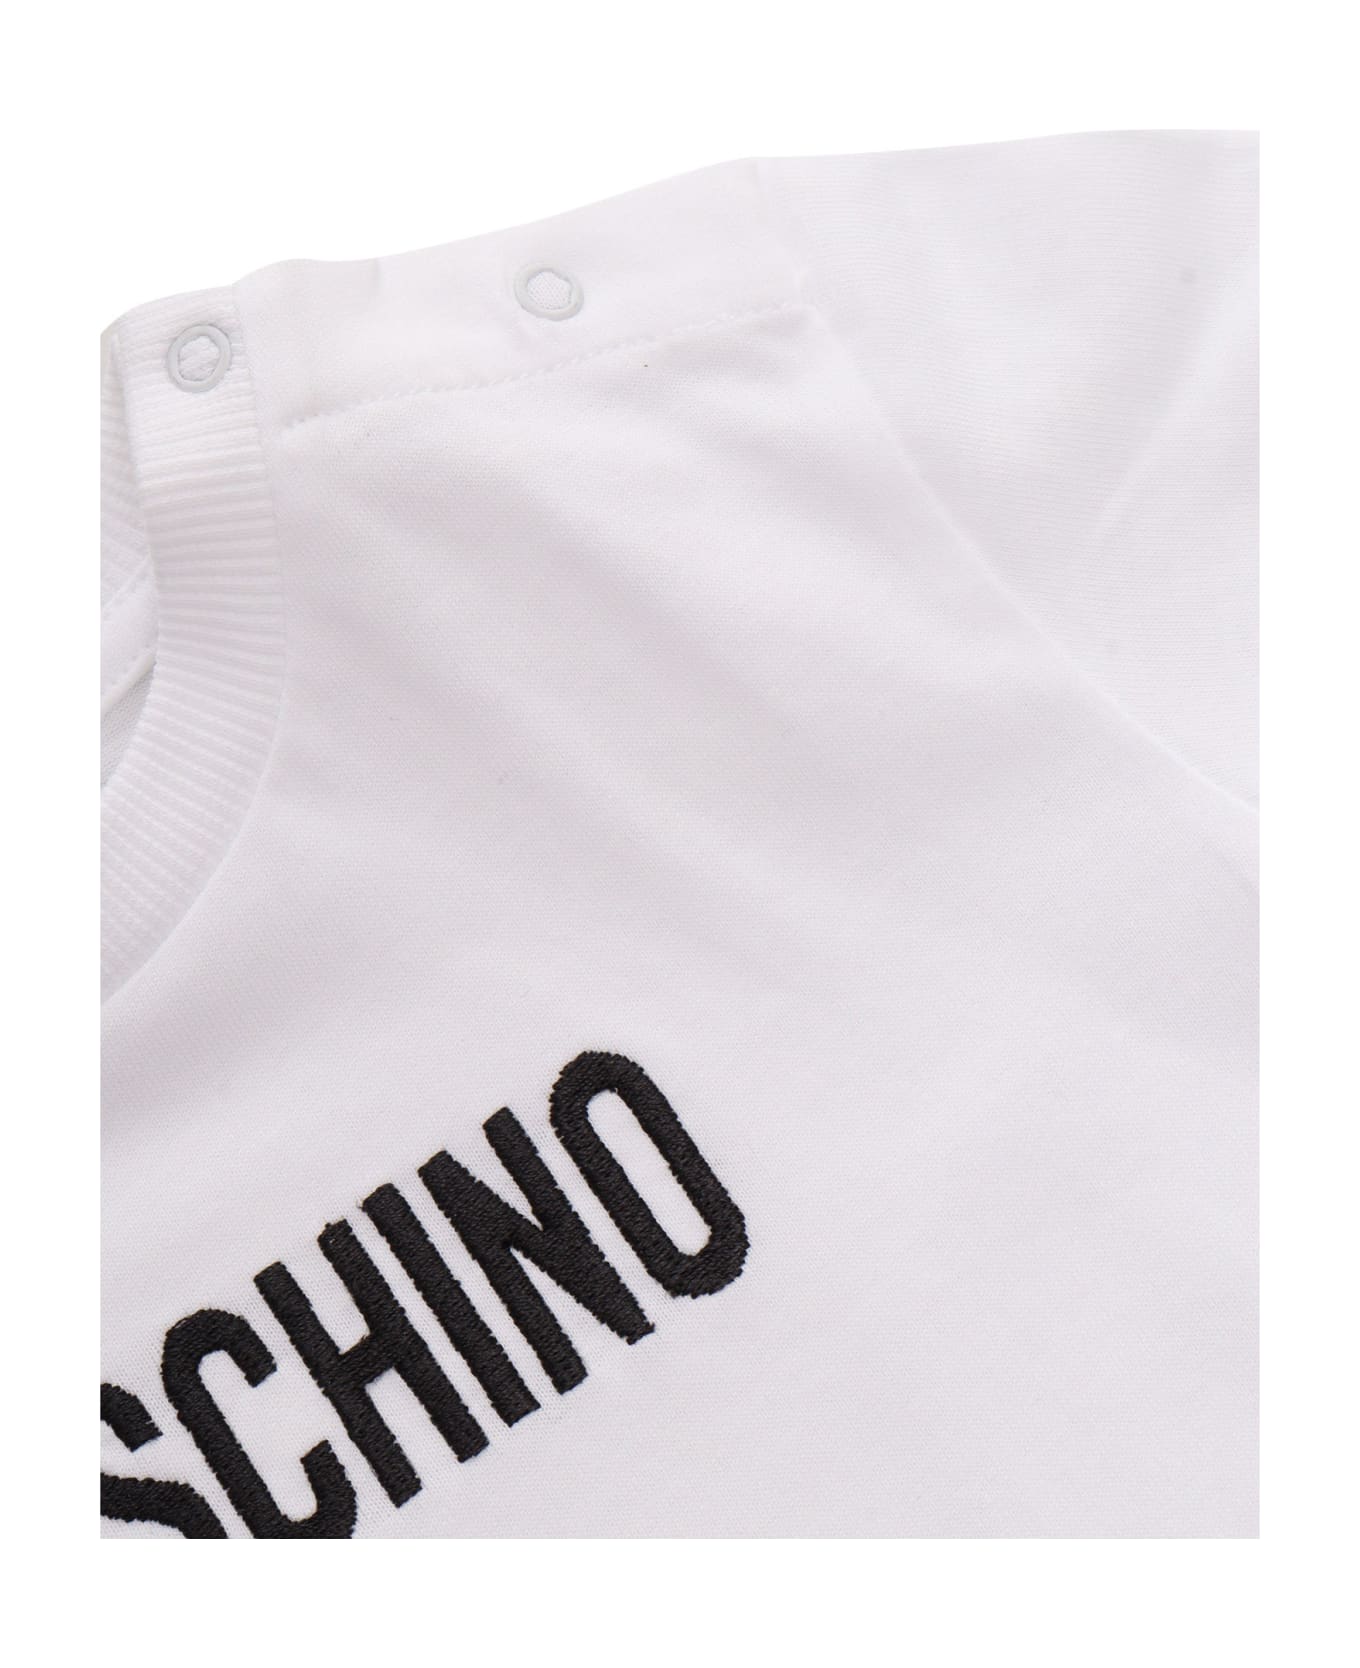 Moschino Short-sleeved Bodysuit - WHITE ボディスーツ＆セットアップ